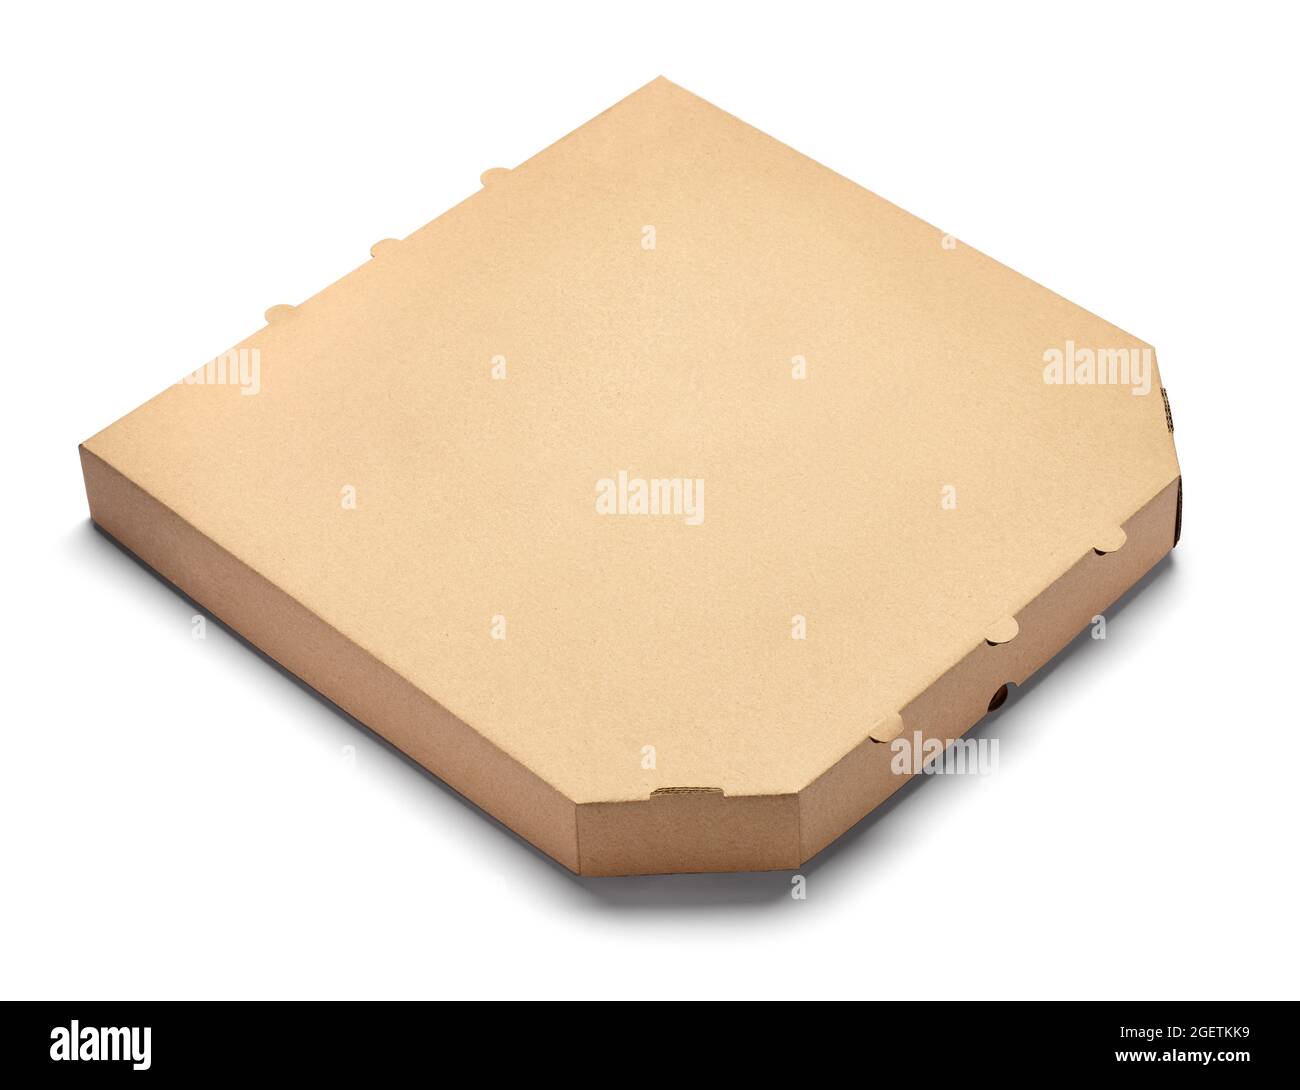 boîte à pizza carton de livraison de nourriture Banque D'Images